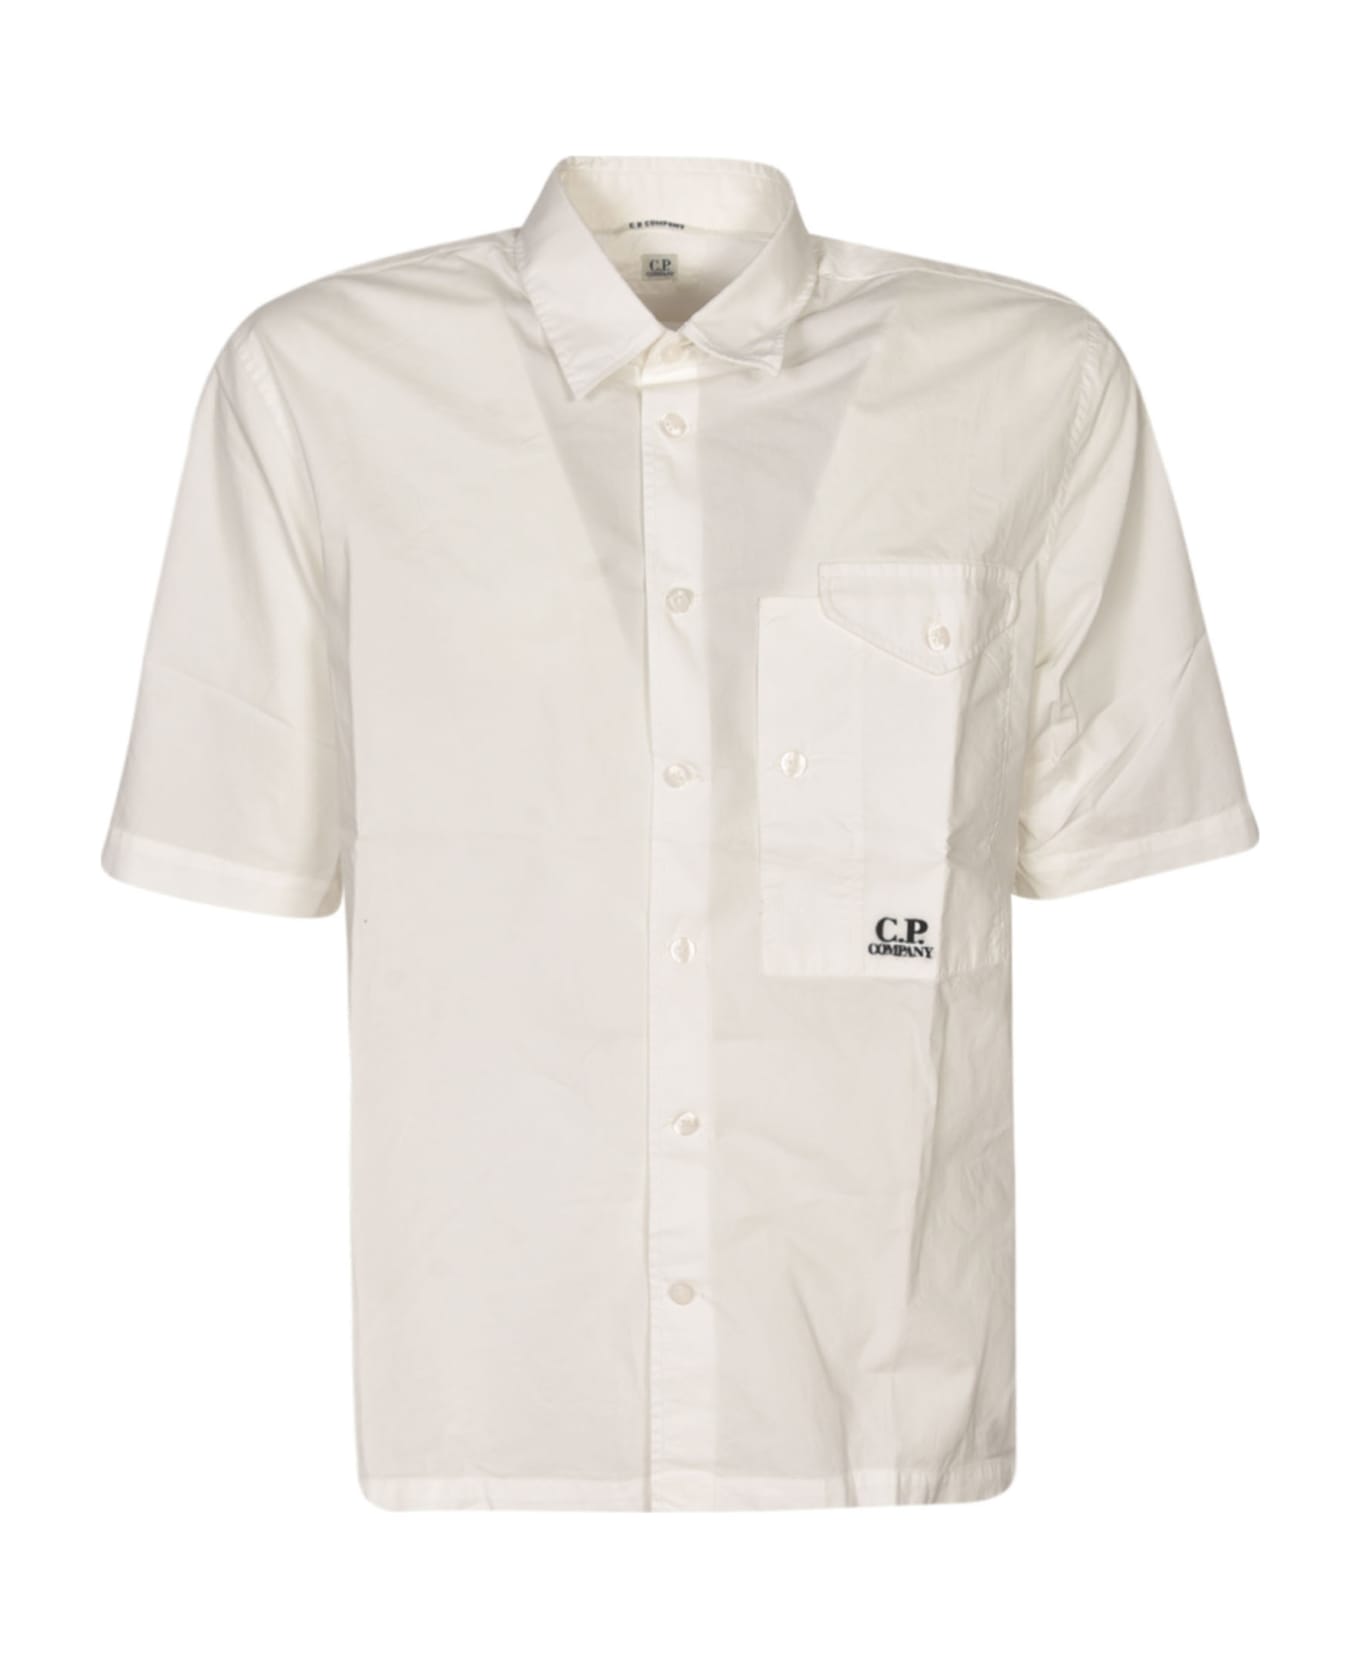 C.P. Company Oversized Pocket Short-sleeved Shirt - Gauze White シャツ